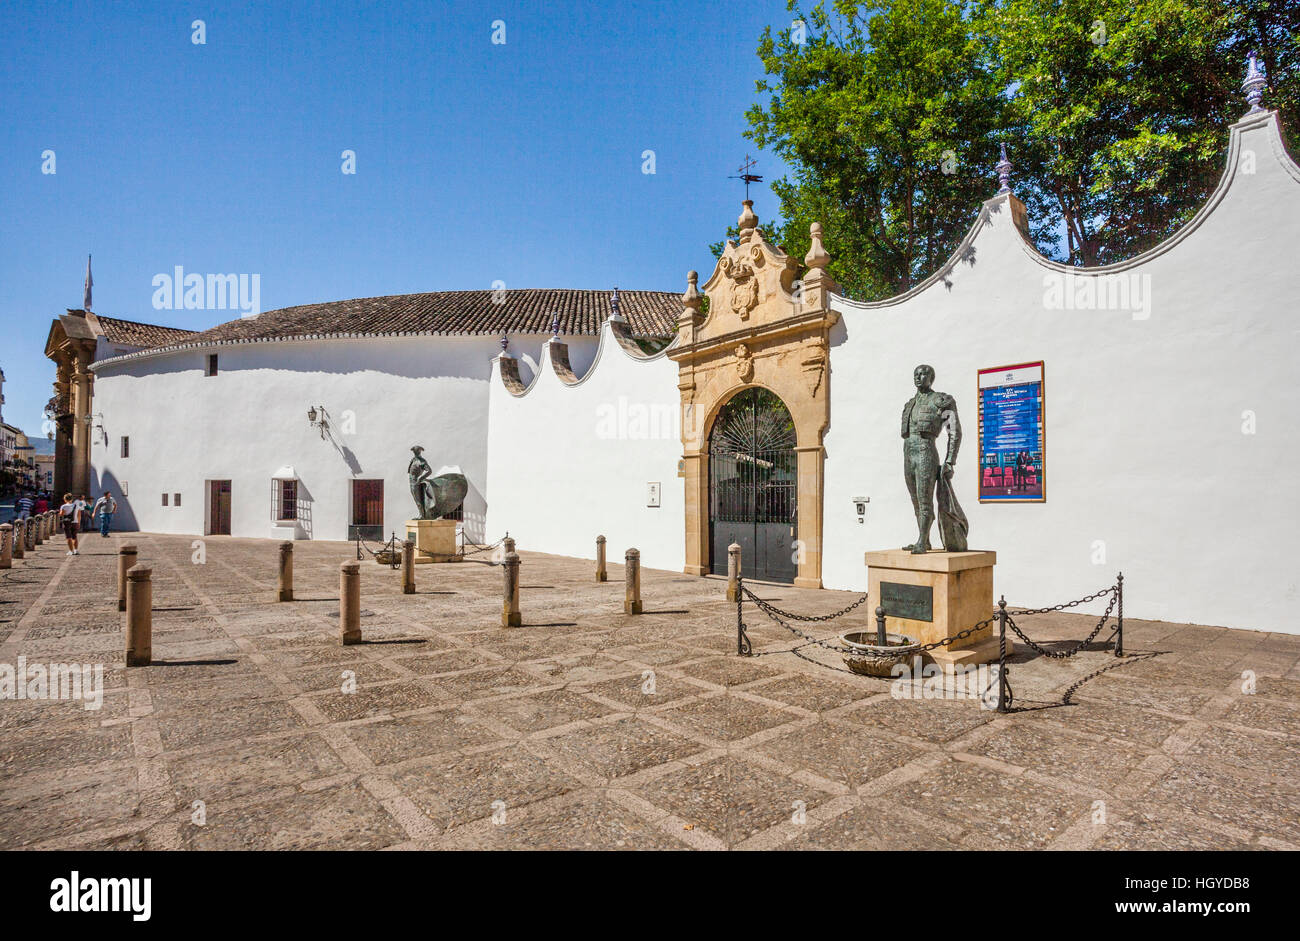 Espagne, Andalousie, province de Malaga, Ronda, sculptures de toreros célèbres Ortonez Cayeatano et Antonio Ordonez (père et fils) Banque D'Images